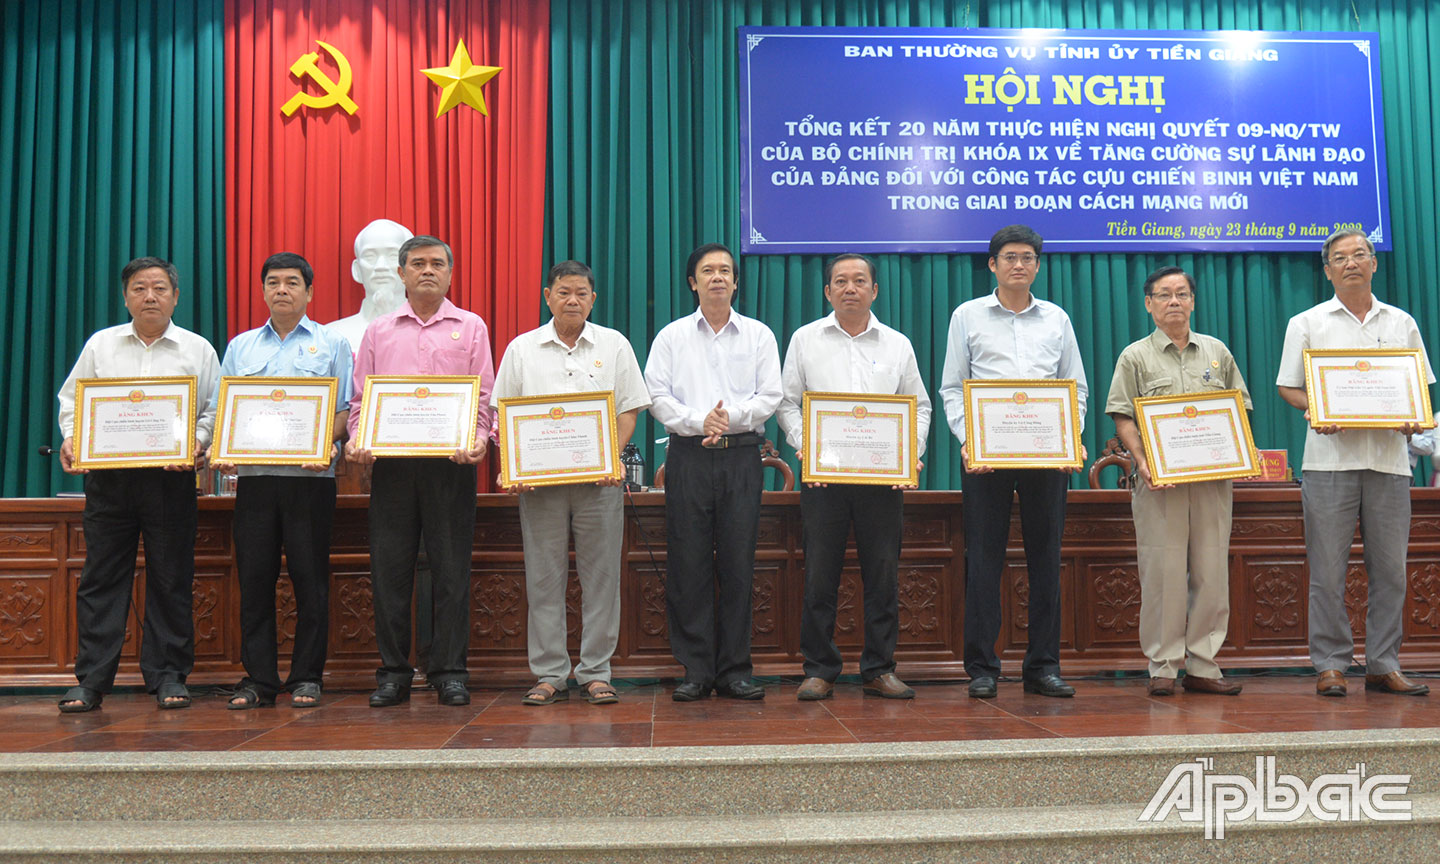 Đồng chí Nguyễn Văn Danh khen thưởng các tập thể có thành tích xuất sắc qua hơn 20 năm thực hiện Nghị quyết 09 của Bộ Chính trị.